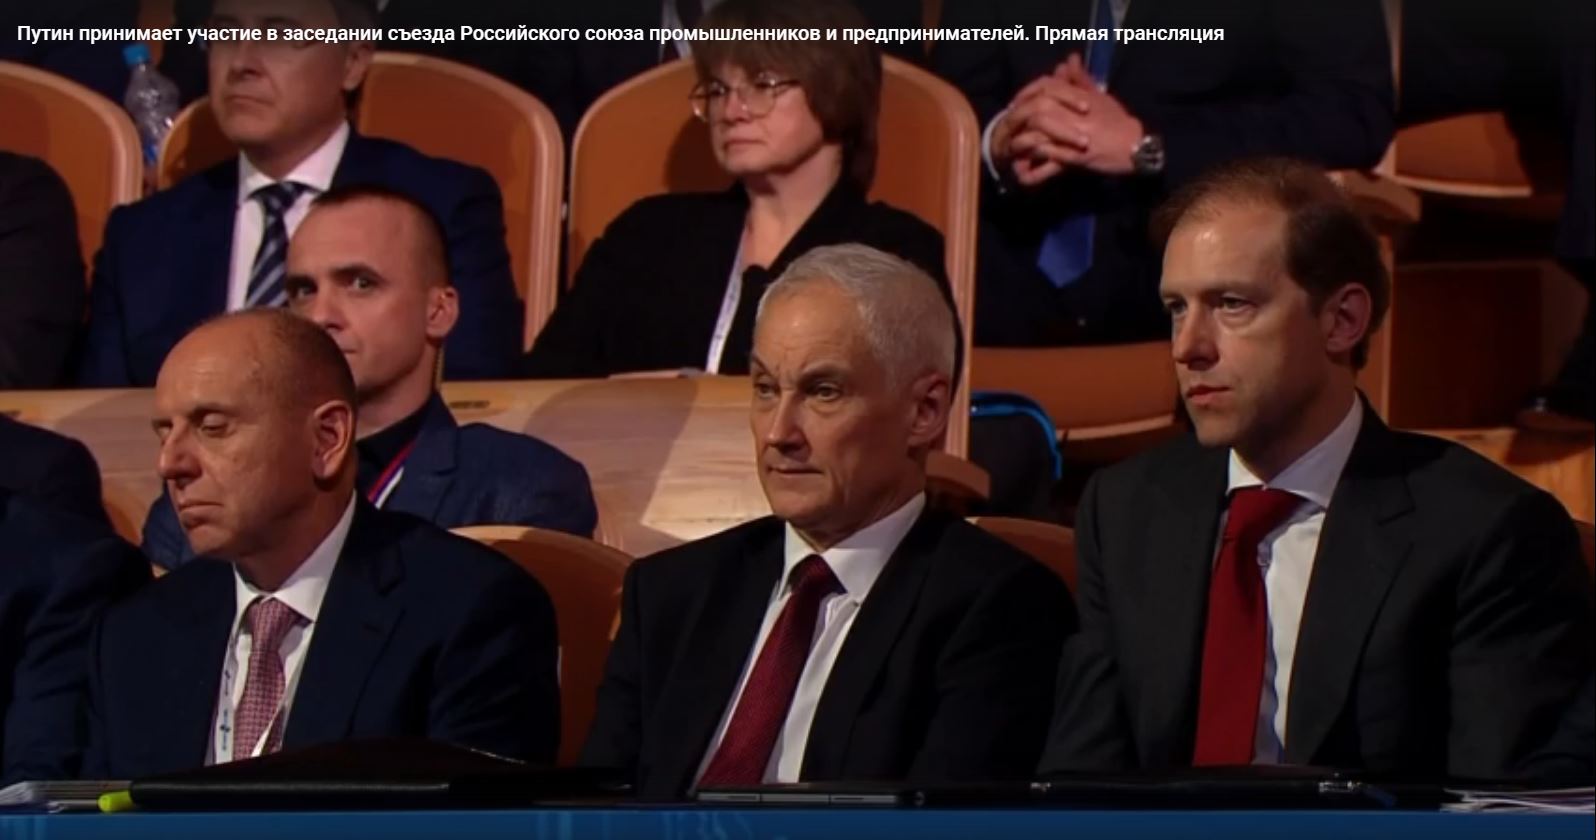 Вице-премьеры Белоусов, Мантуров и другие участники съезда РСПП внимательно слушают вступительное слово Путина